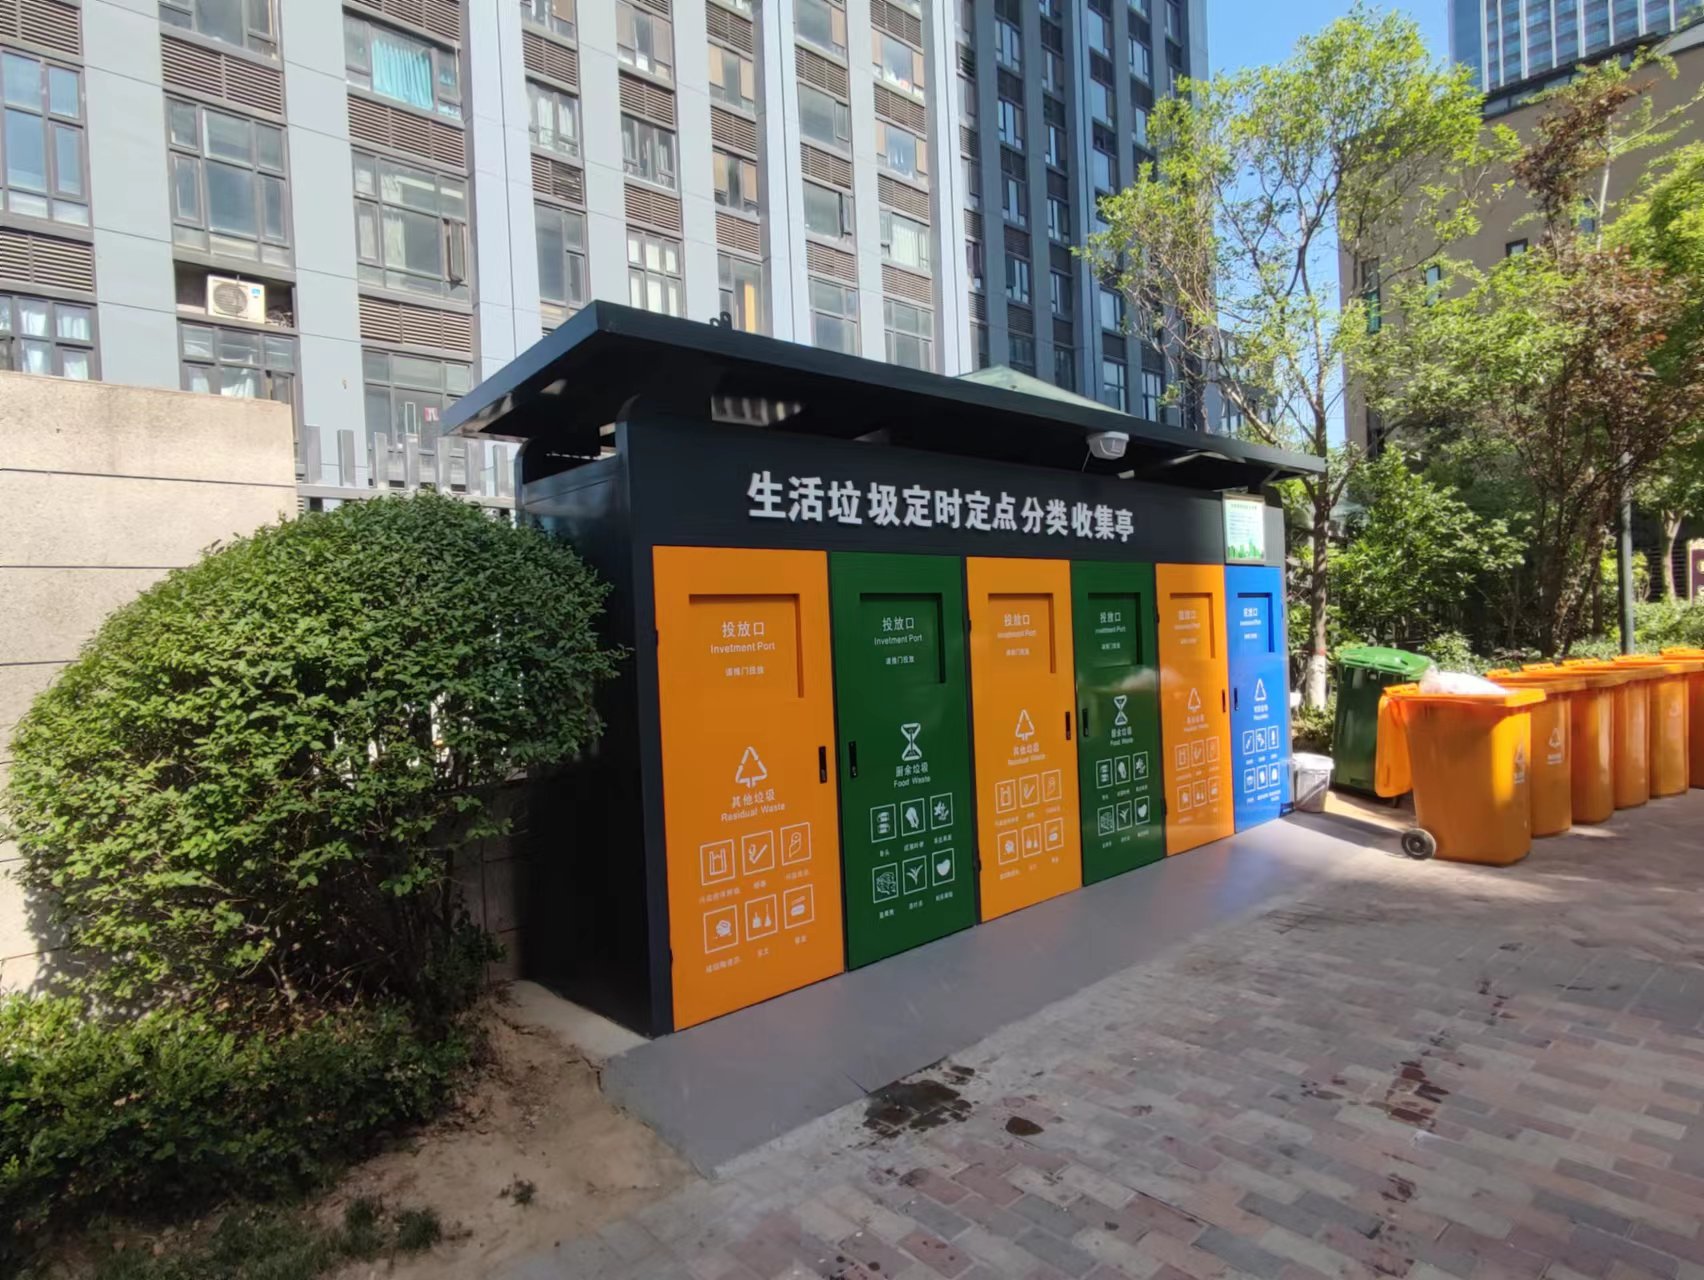 天津每天厨余垃圾处理能力达1950吨 资源利用率达82%